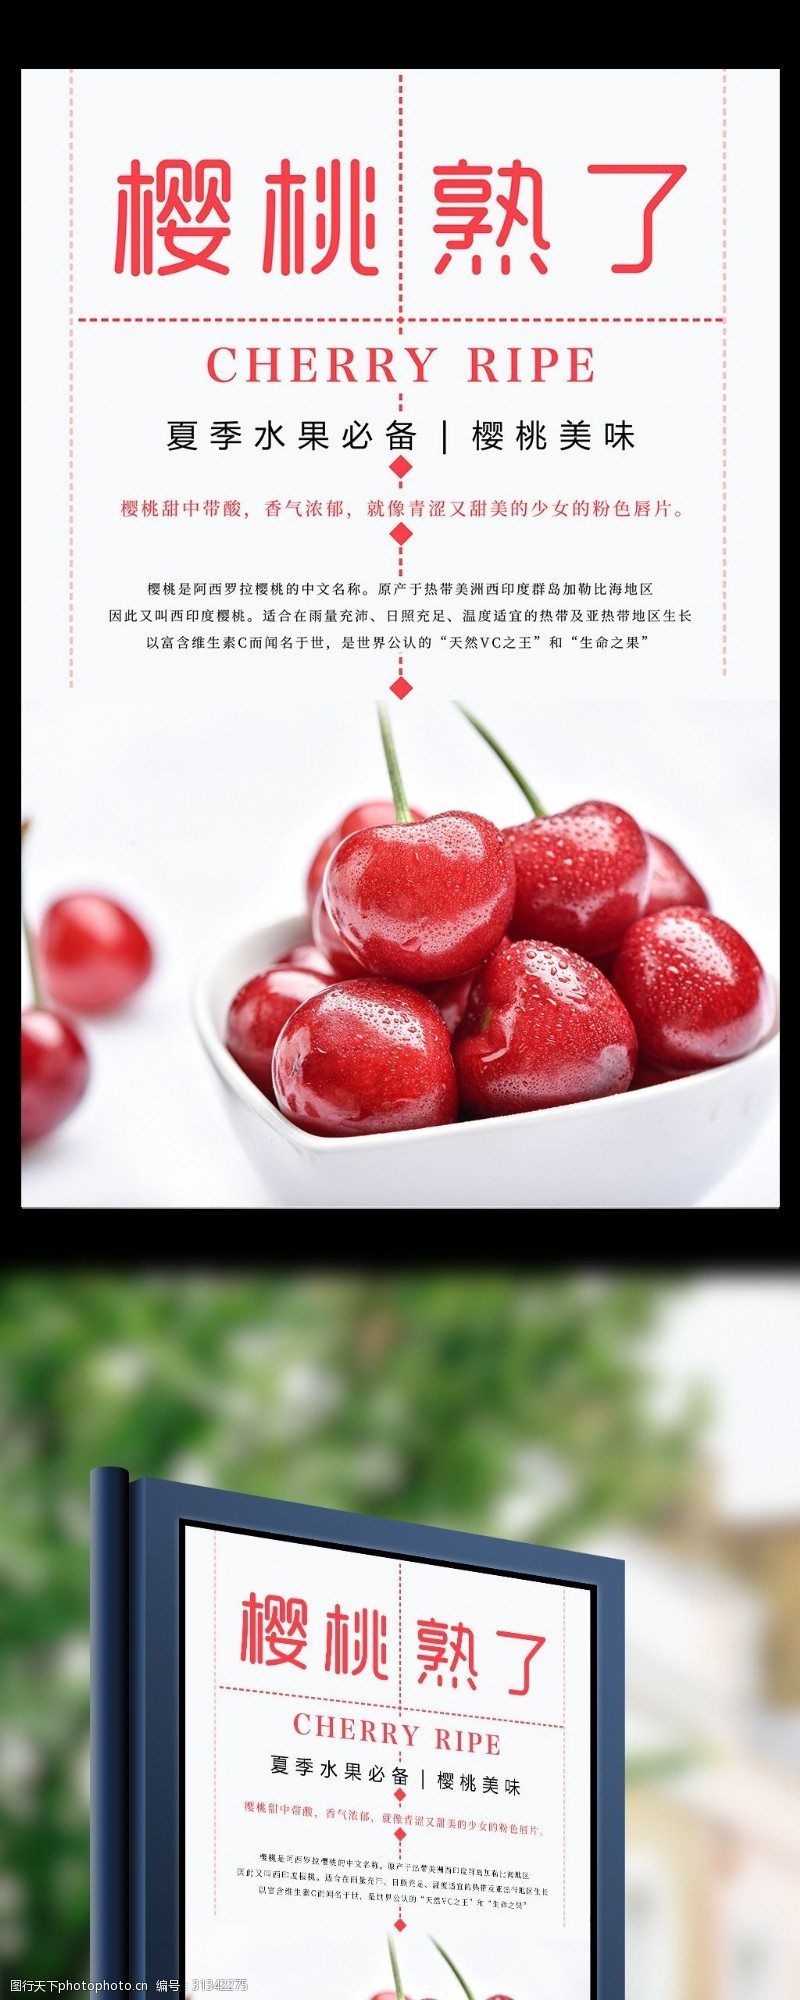 熟荔枝樱桃熟了水果美食海报设计